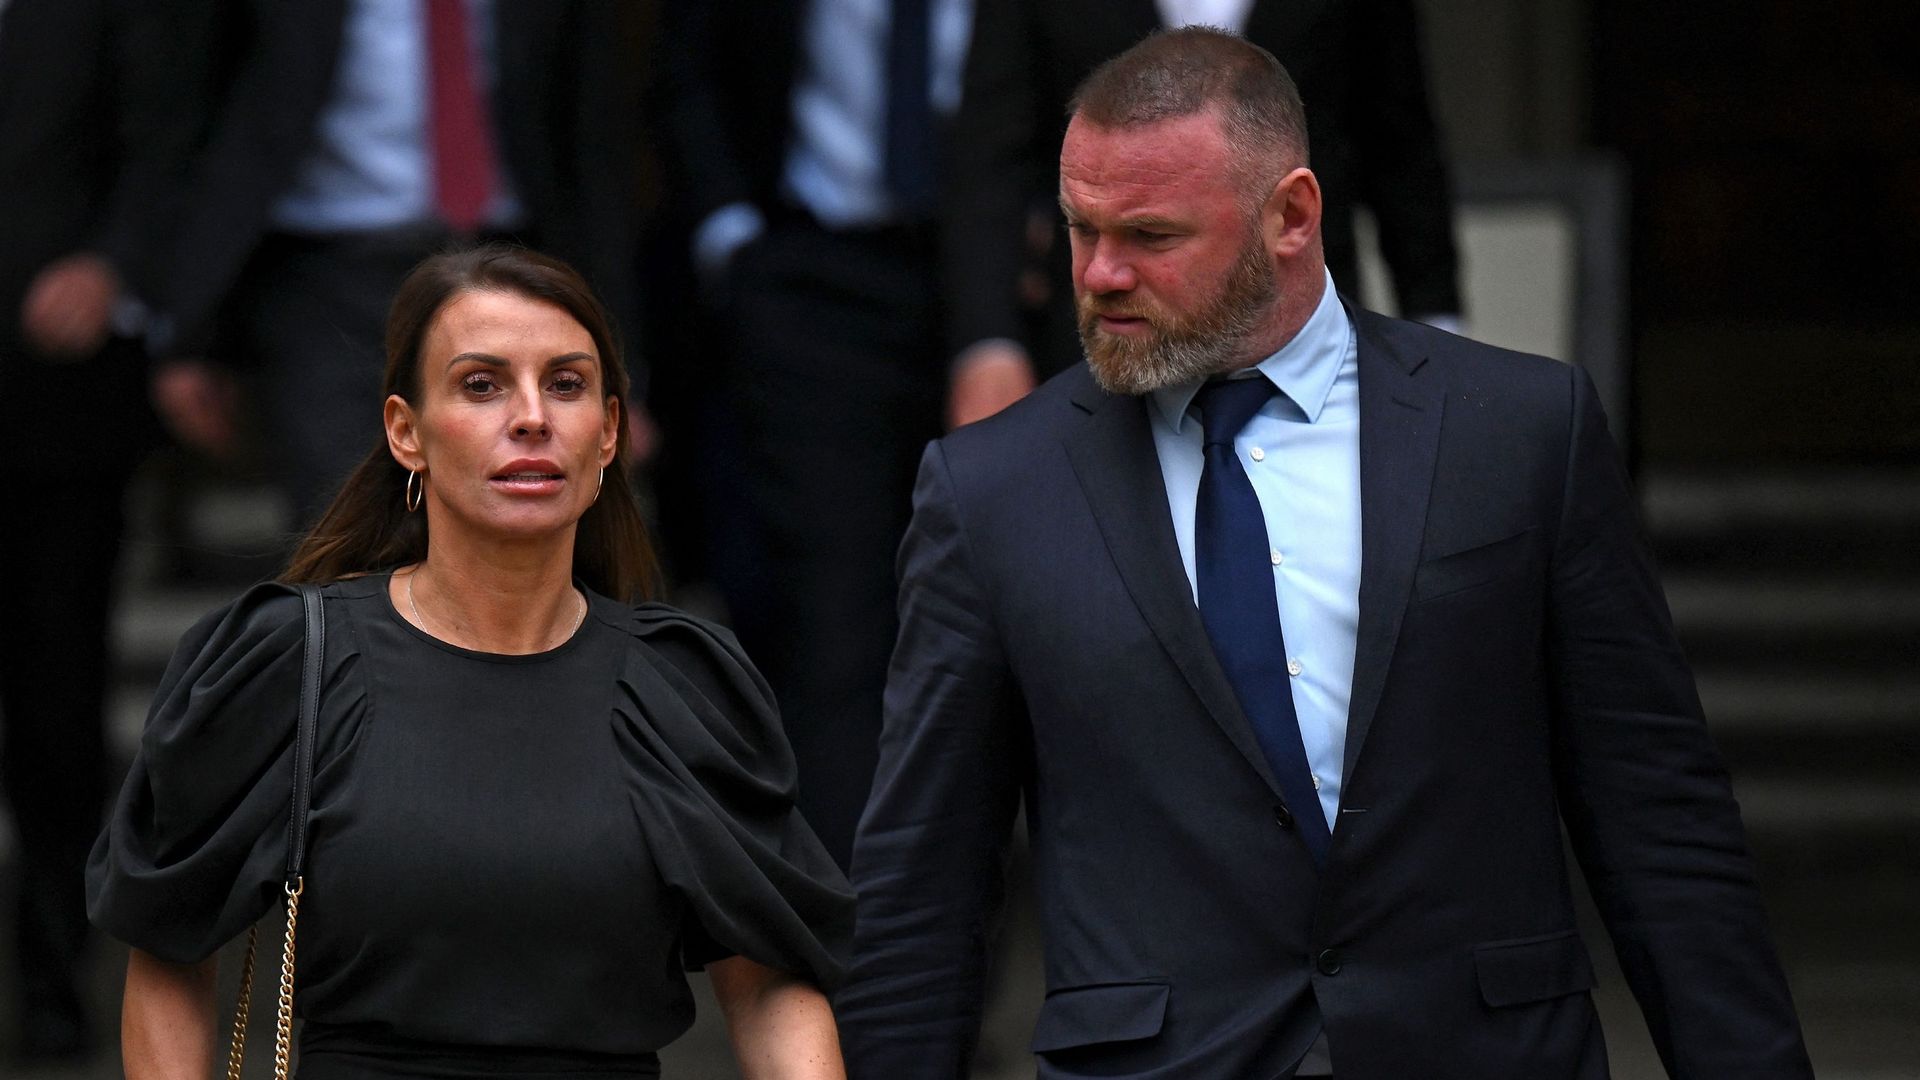 Wayne Rooney, célèbre footballeur anglais, et sa femme Coleen Rooney, quittent la Haute Cour de Justice à Londres, dans le cadre du procès "Wagatha Christie" en mai 2022